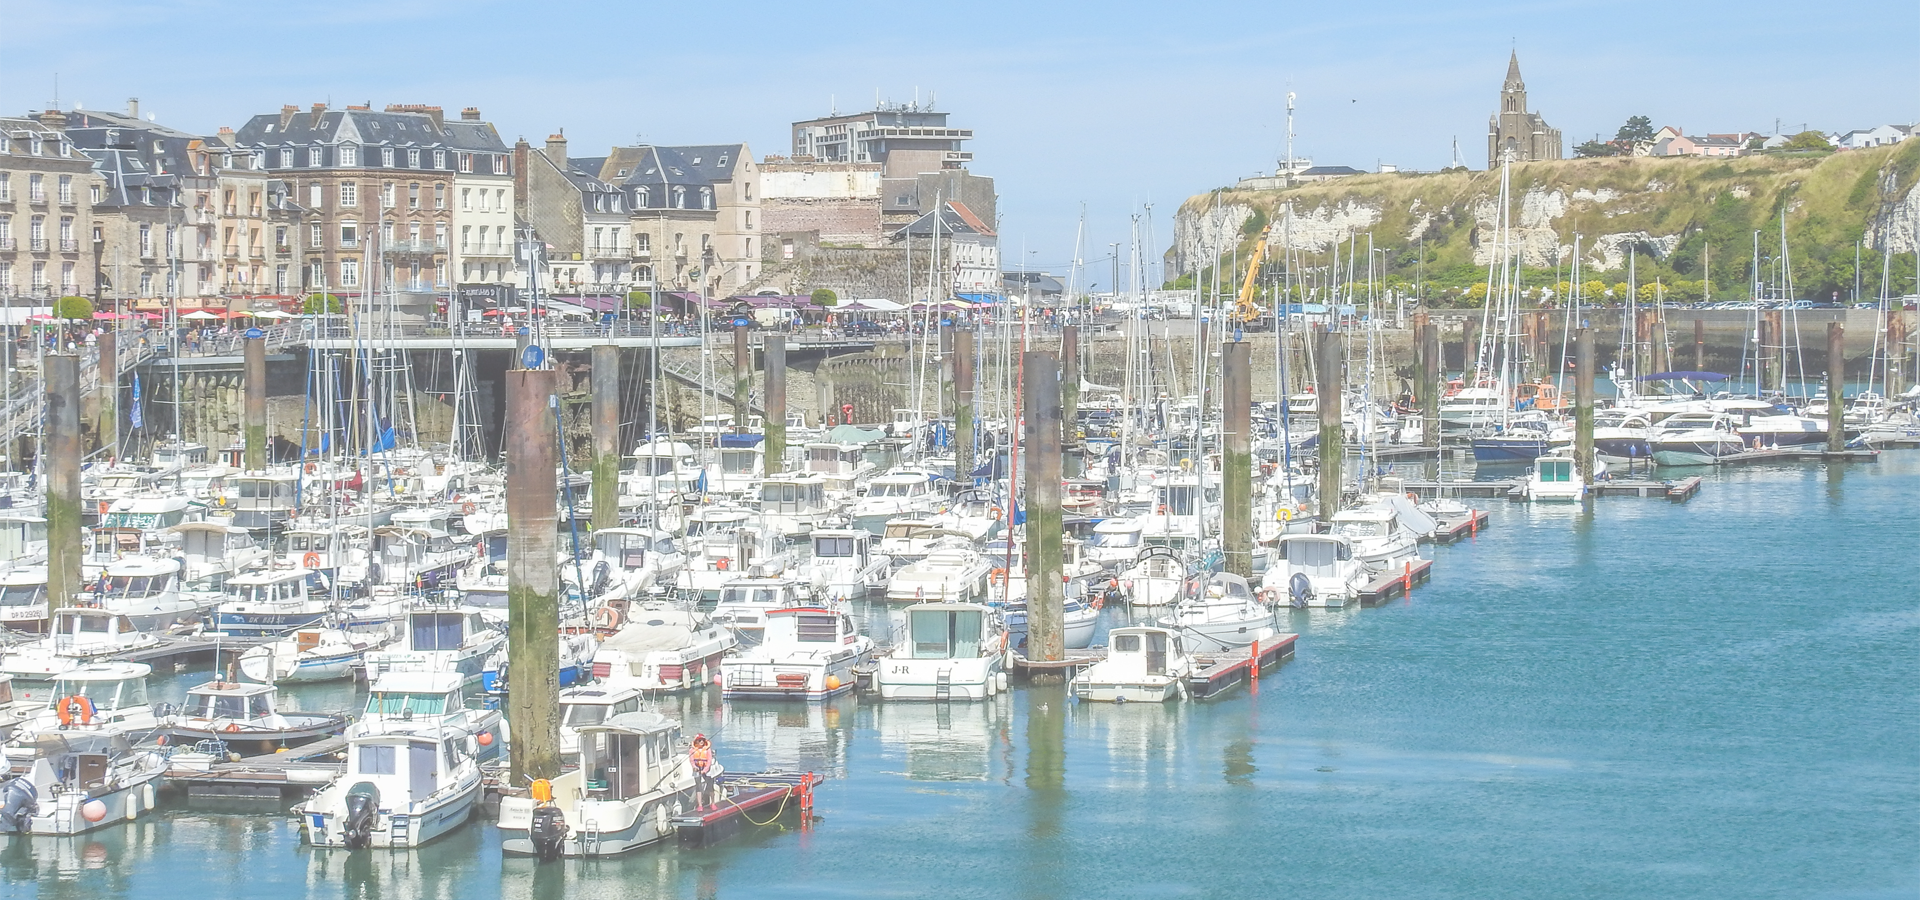 <b>Dieppe, Seine-Maritime Département, Normandy, France</b>